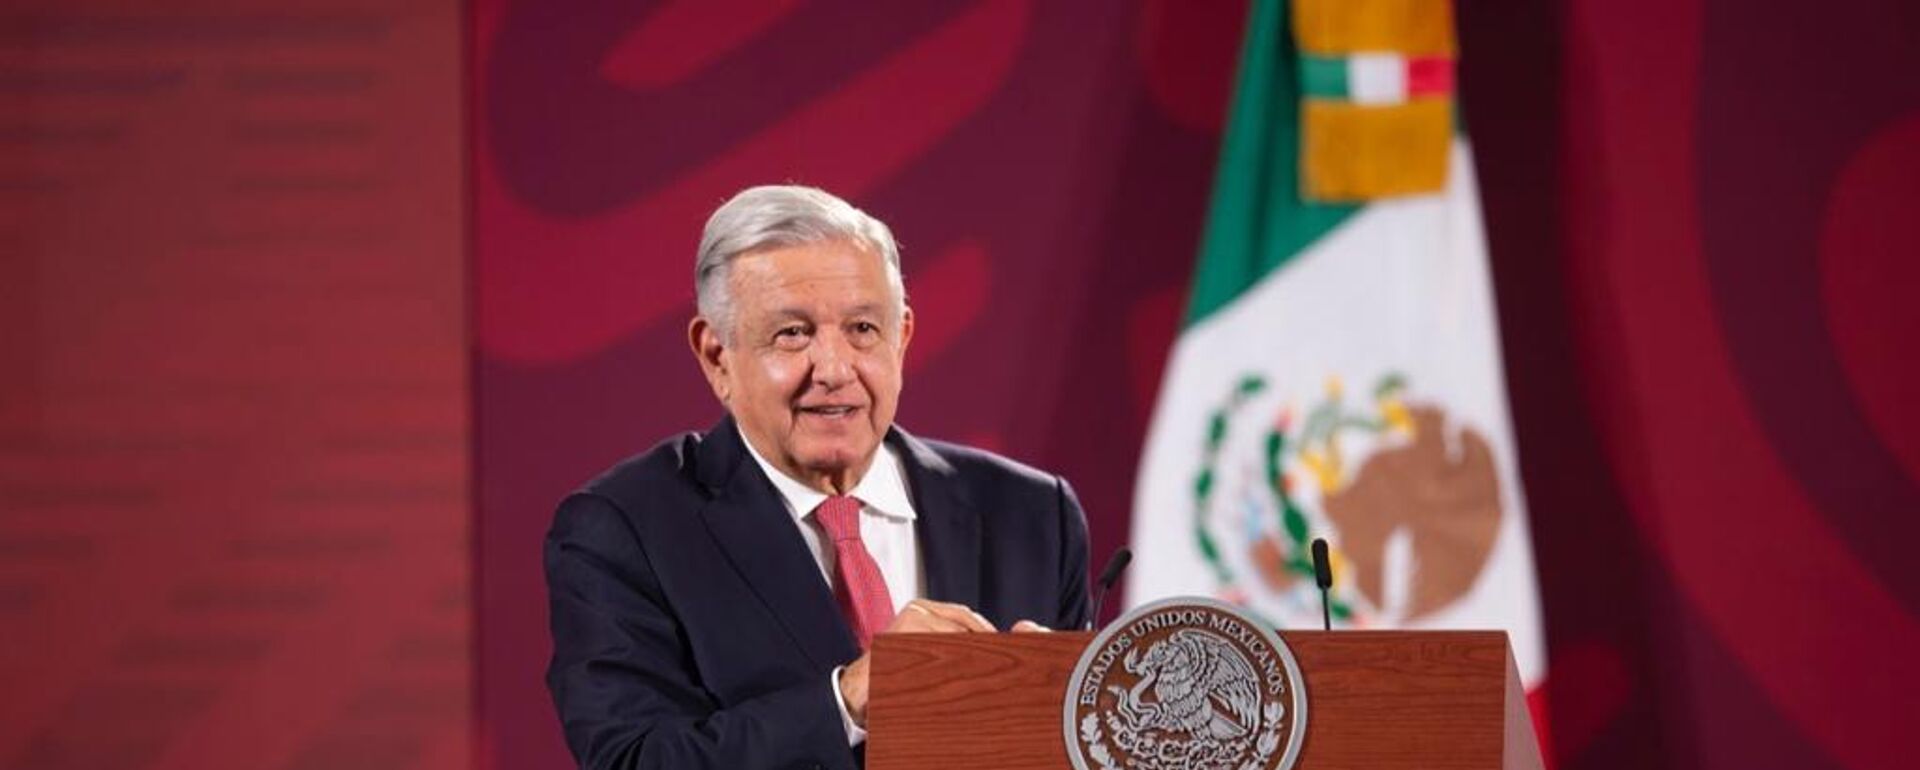 Andrés Manuel López Obrador, presidente de México - Sputnik Mundo, 1920, 08.12.2022